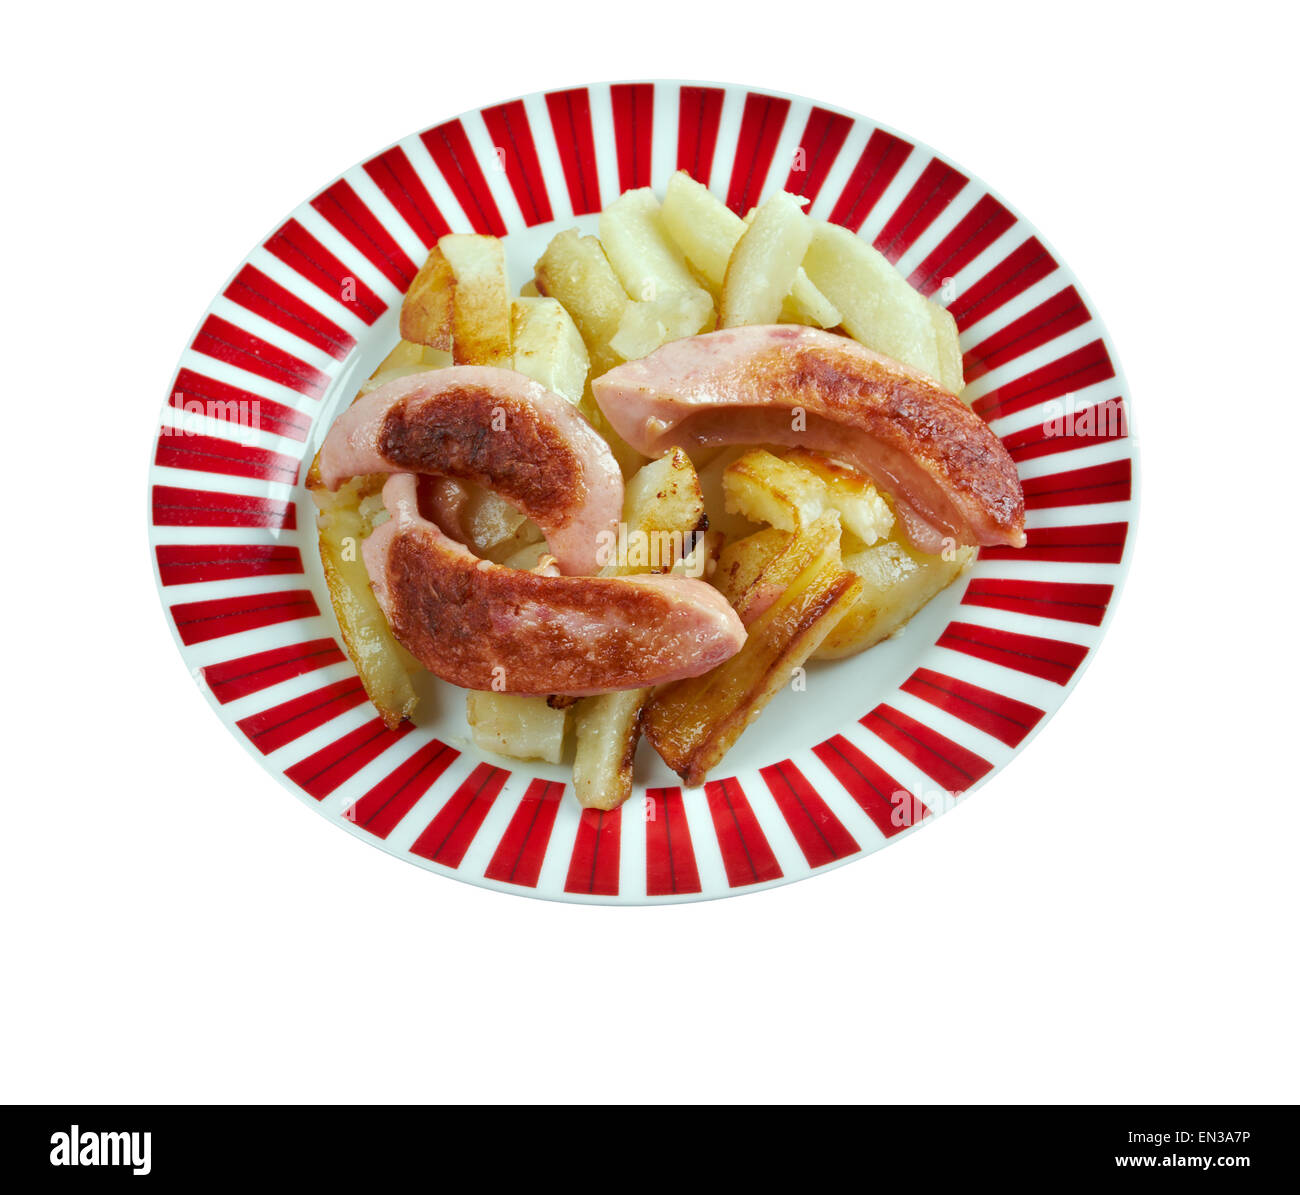 Salchipapas - Fast-Food-Gericht, Speiselokal in lateinischen America.consist dünn geschnittenes Rindfleisch gebratene Würstchen und Französisch Stockfoto